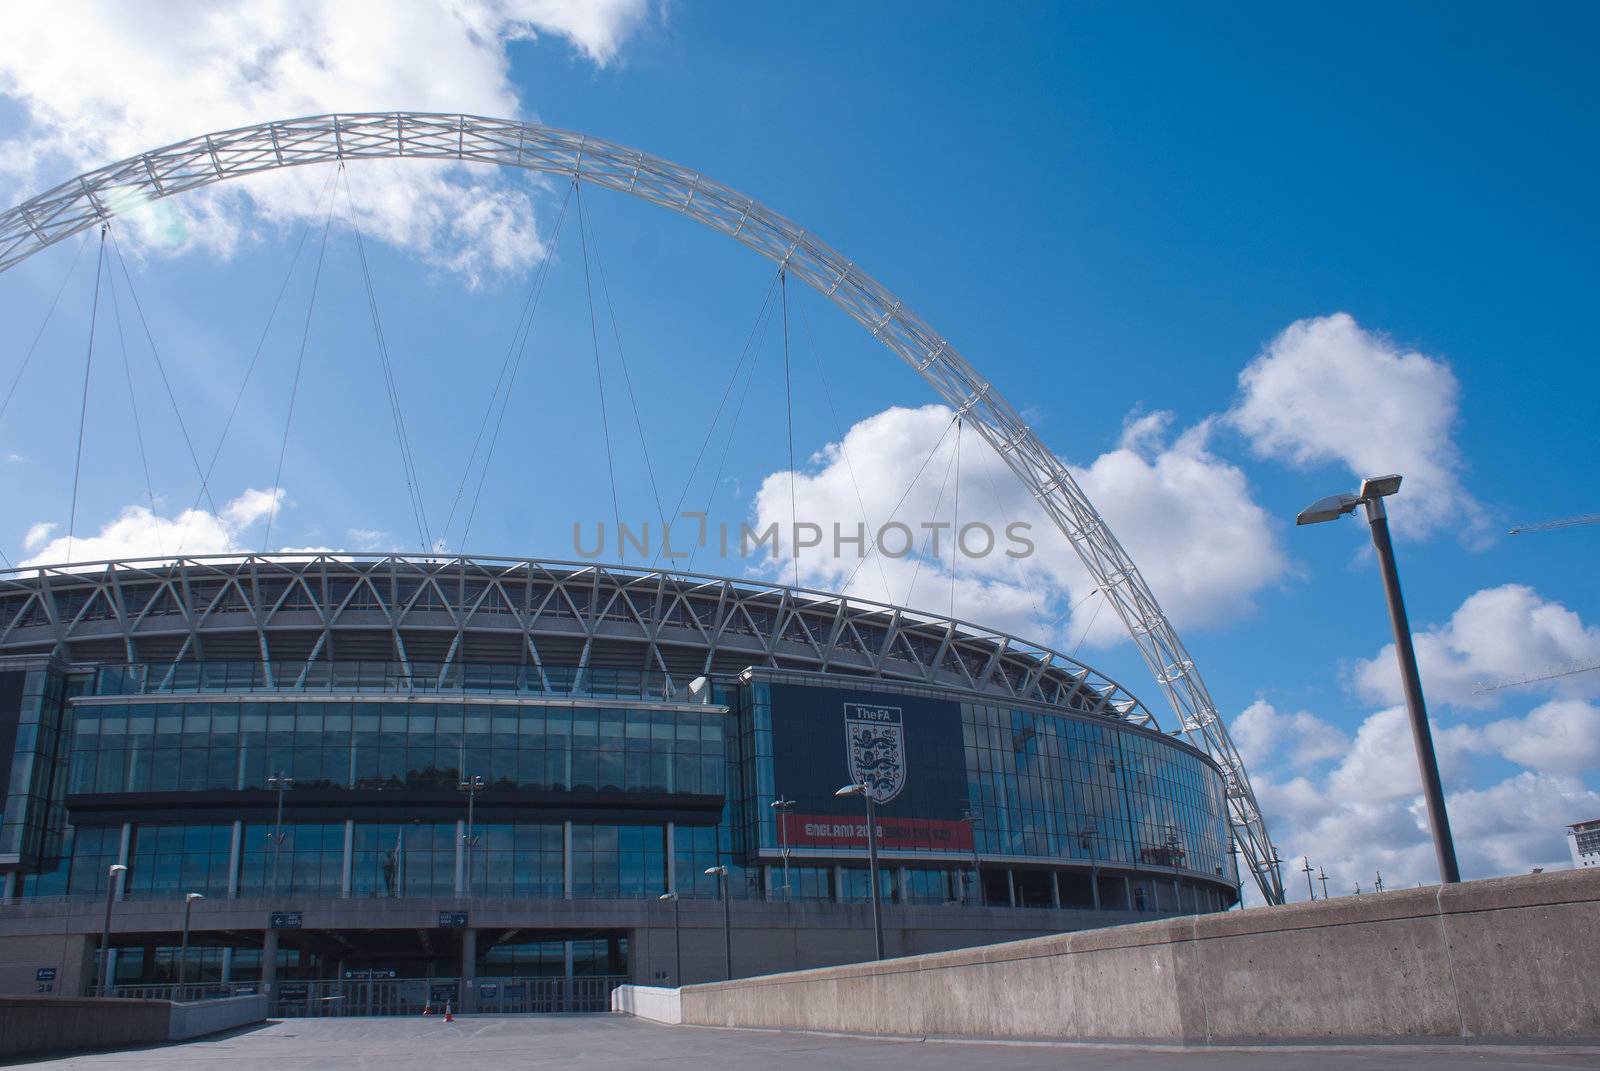 Wembley stadium panorama